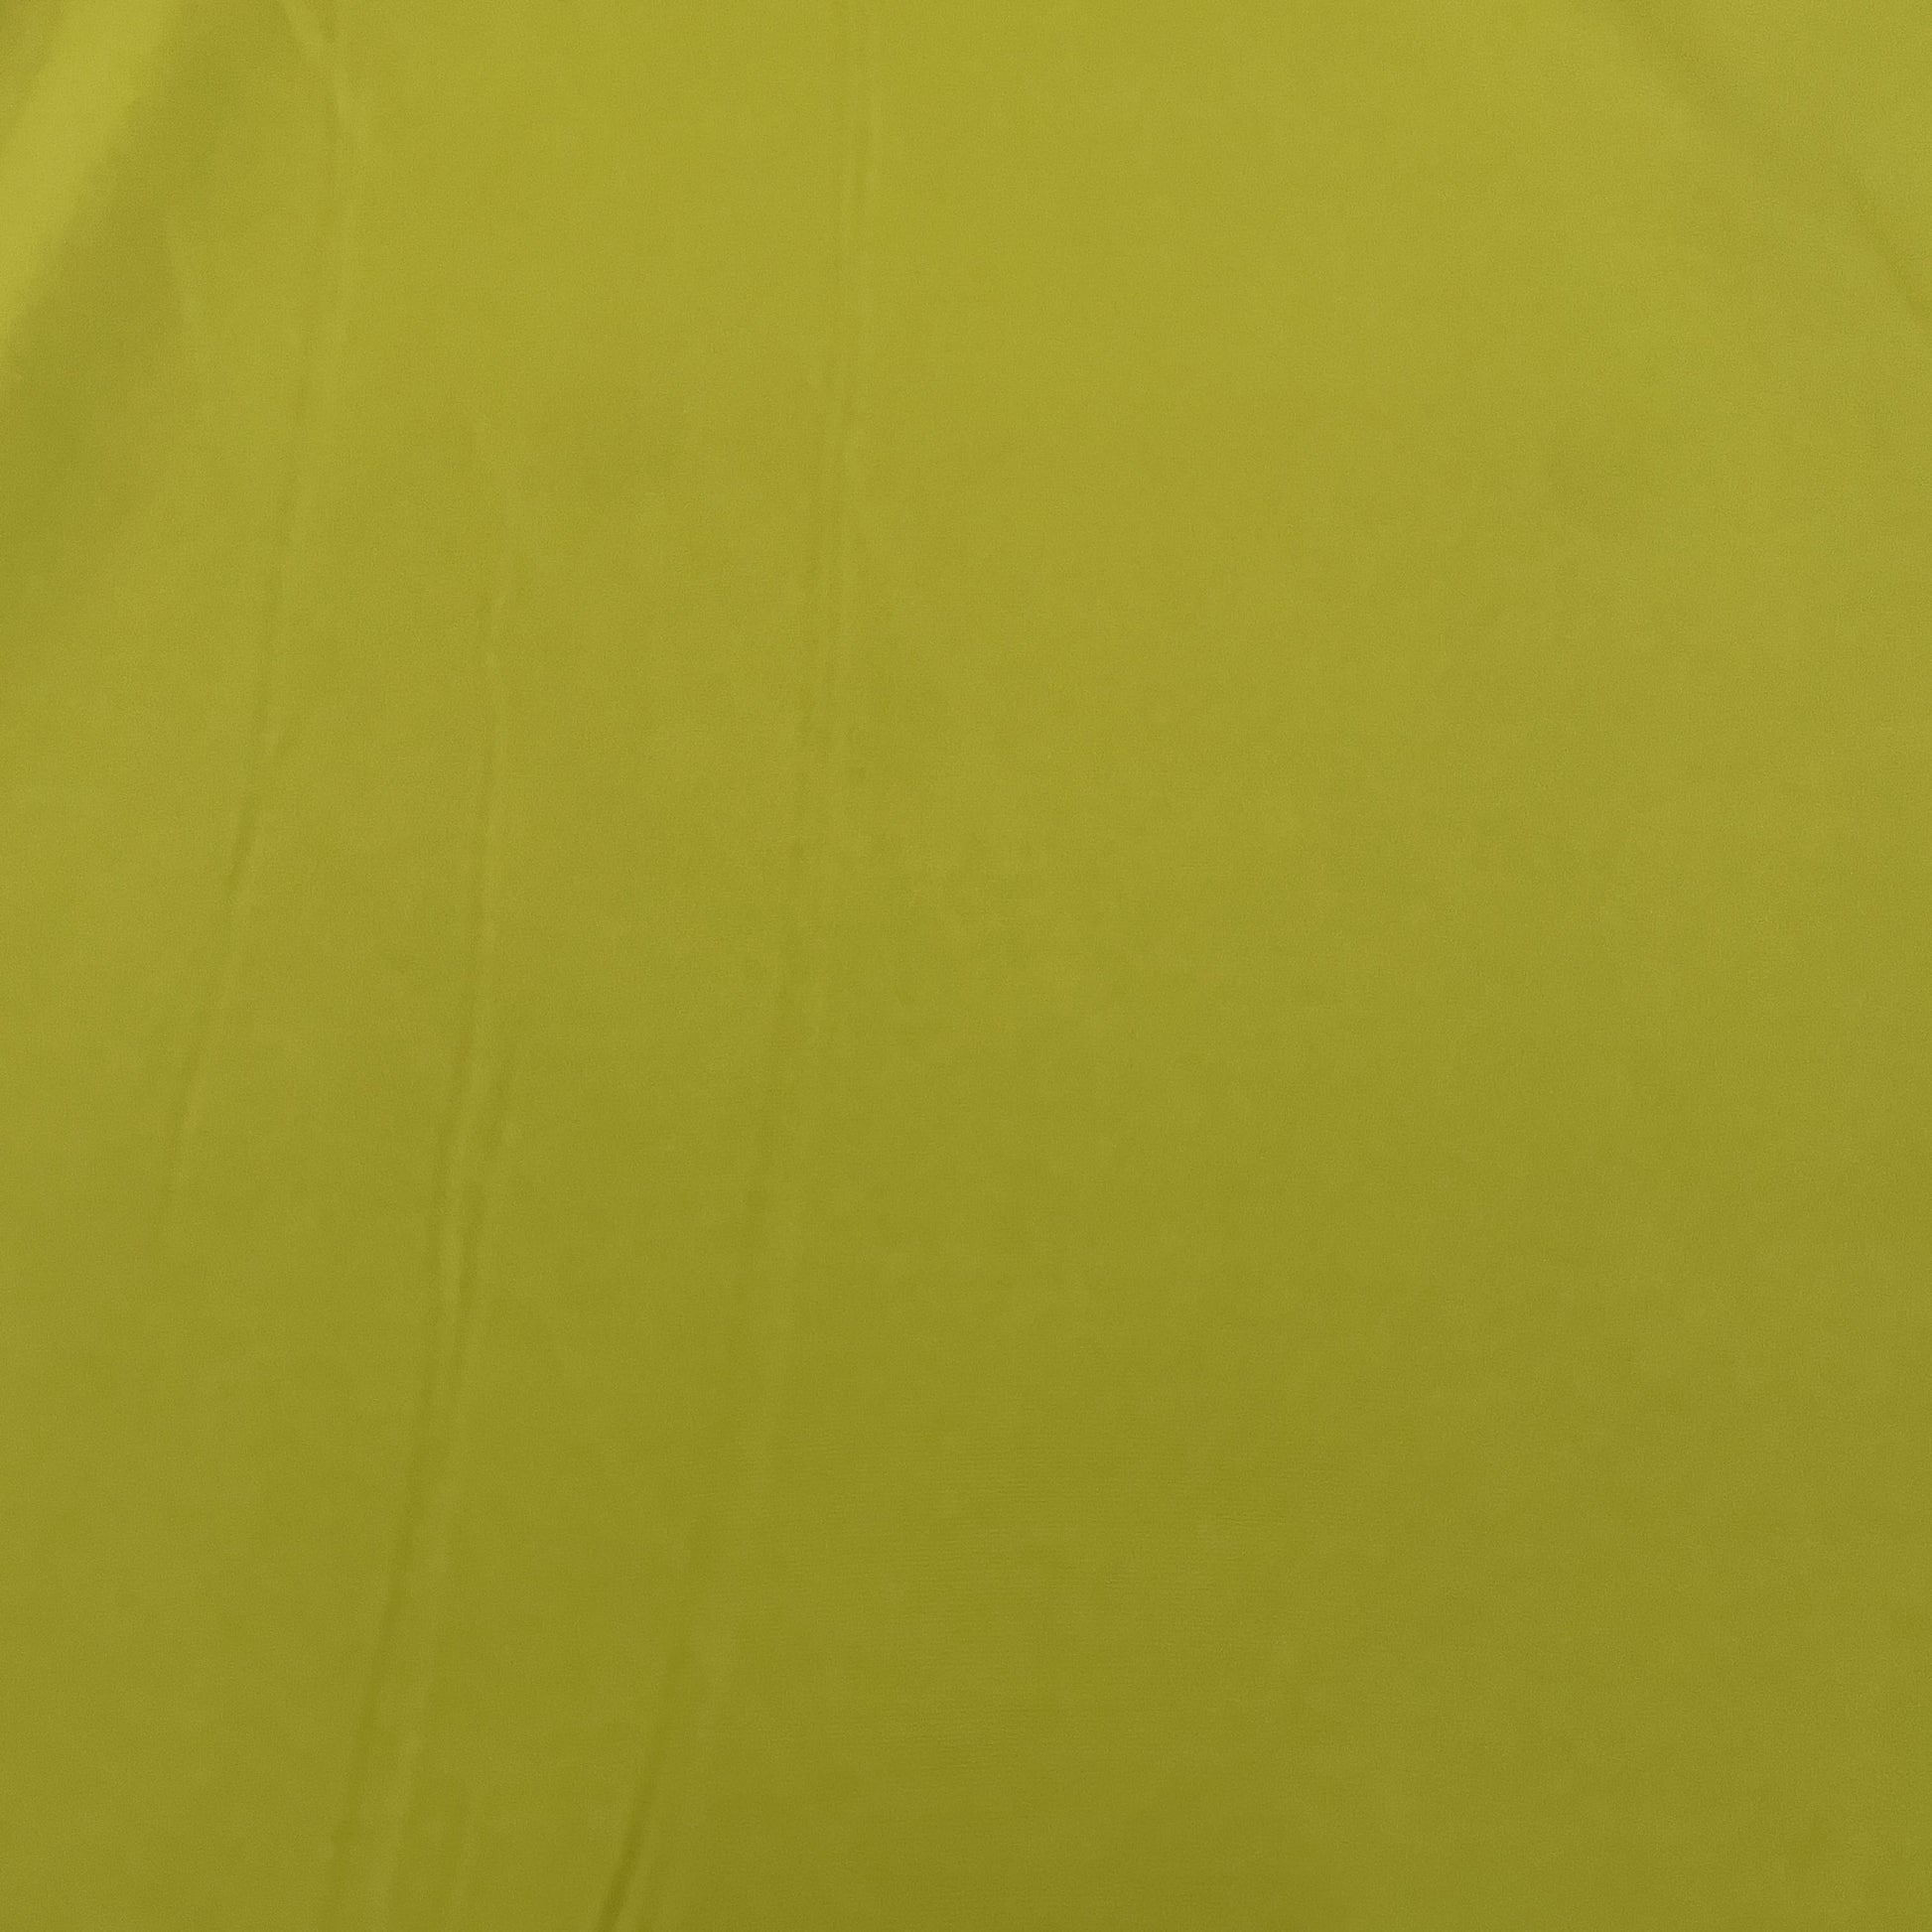 Premium Lemon Green Solid Banana Crepe Fabric